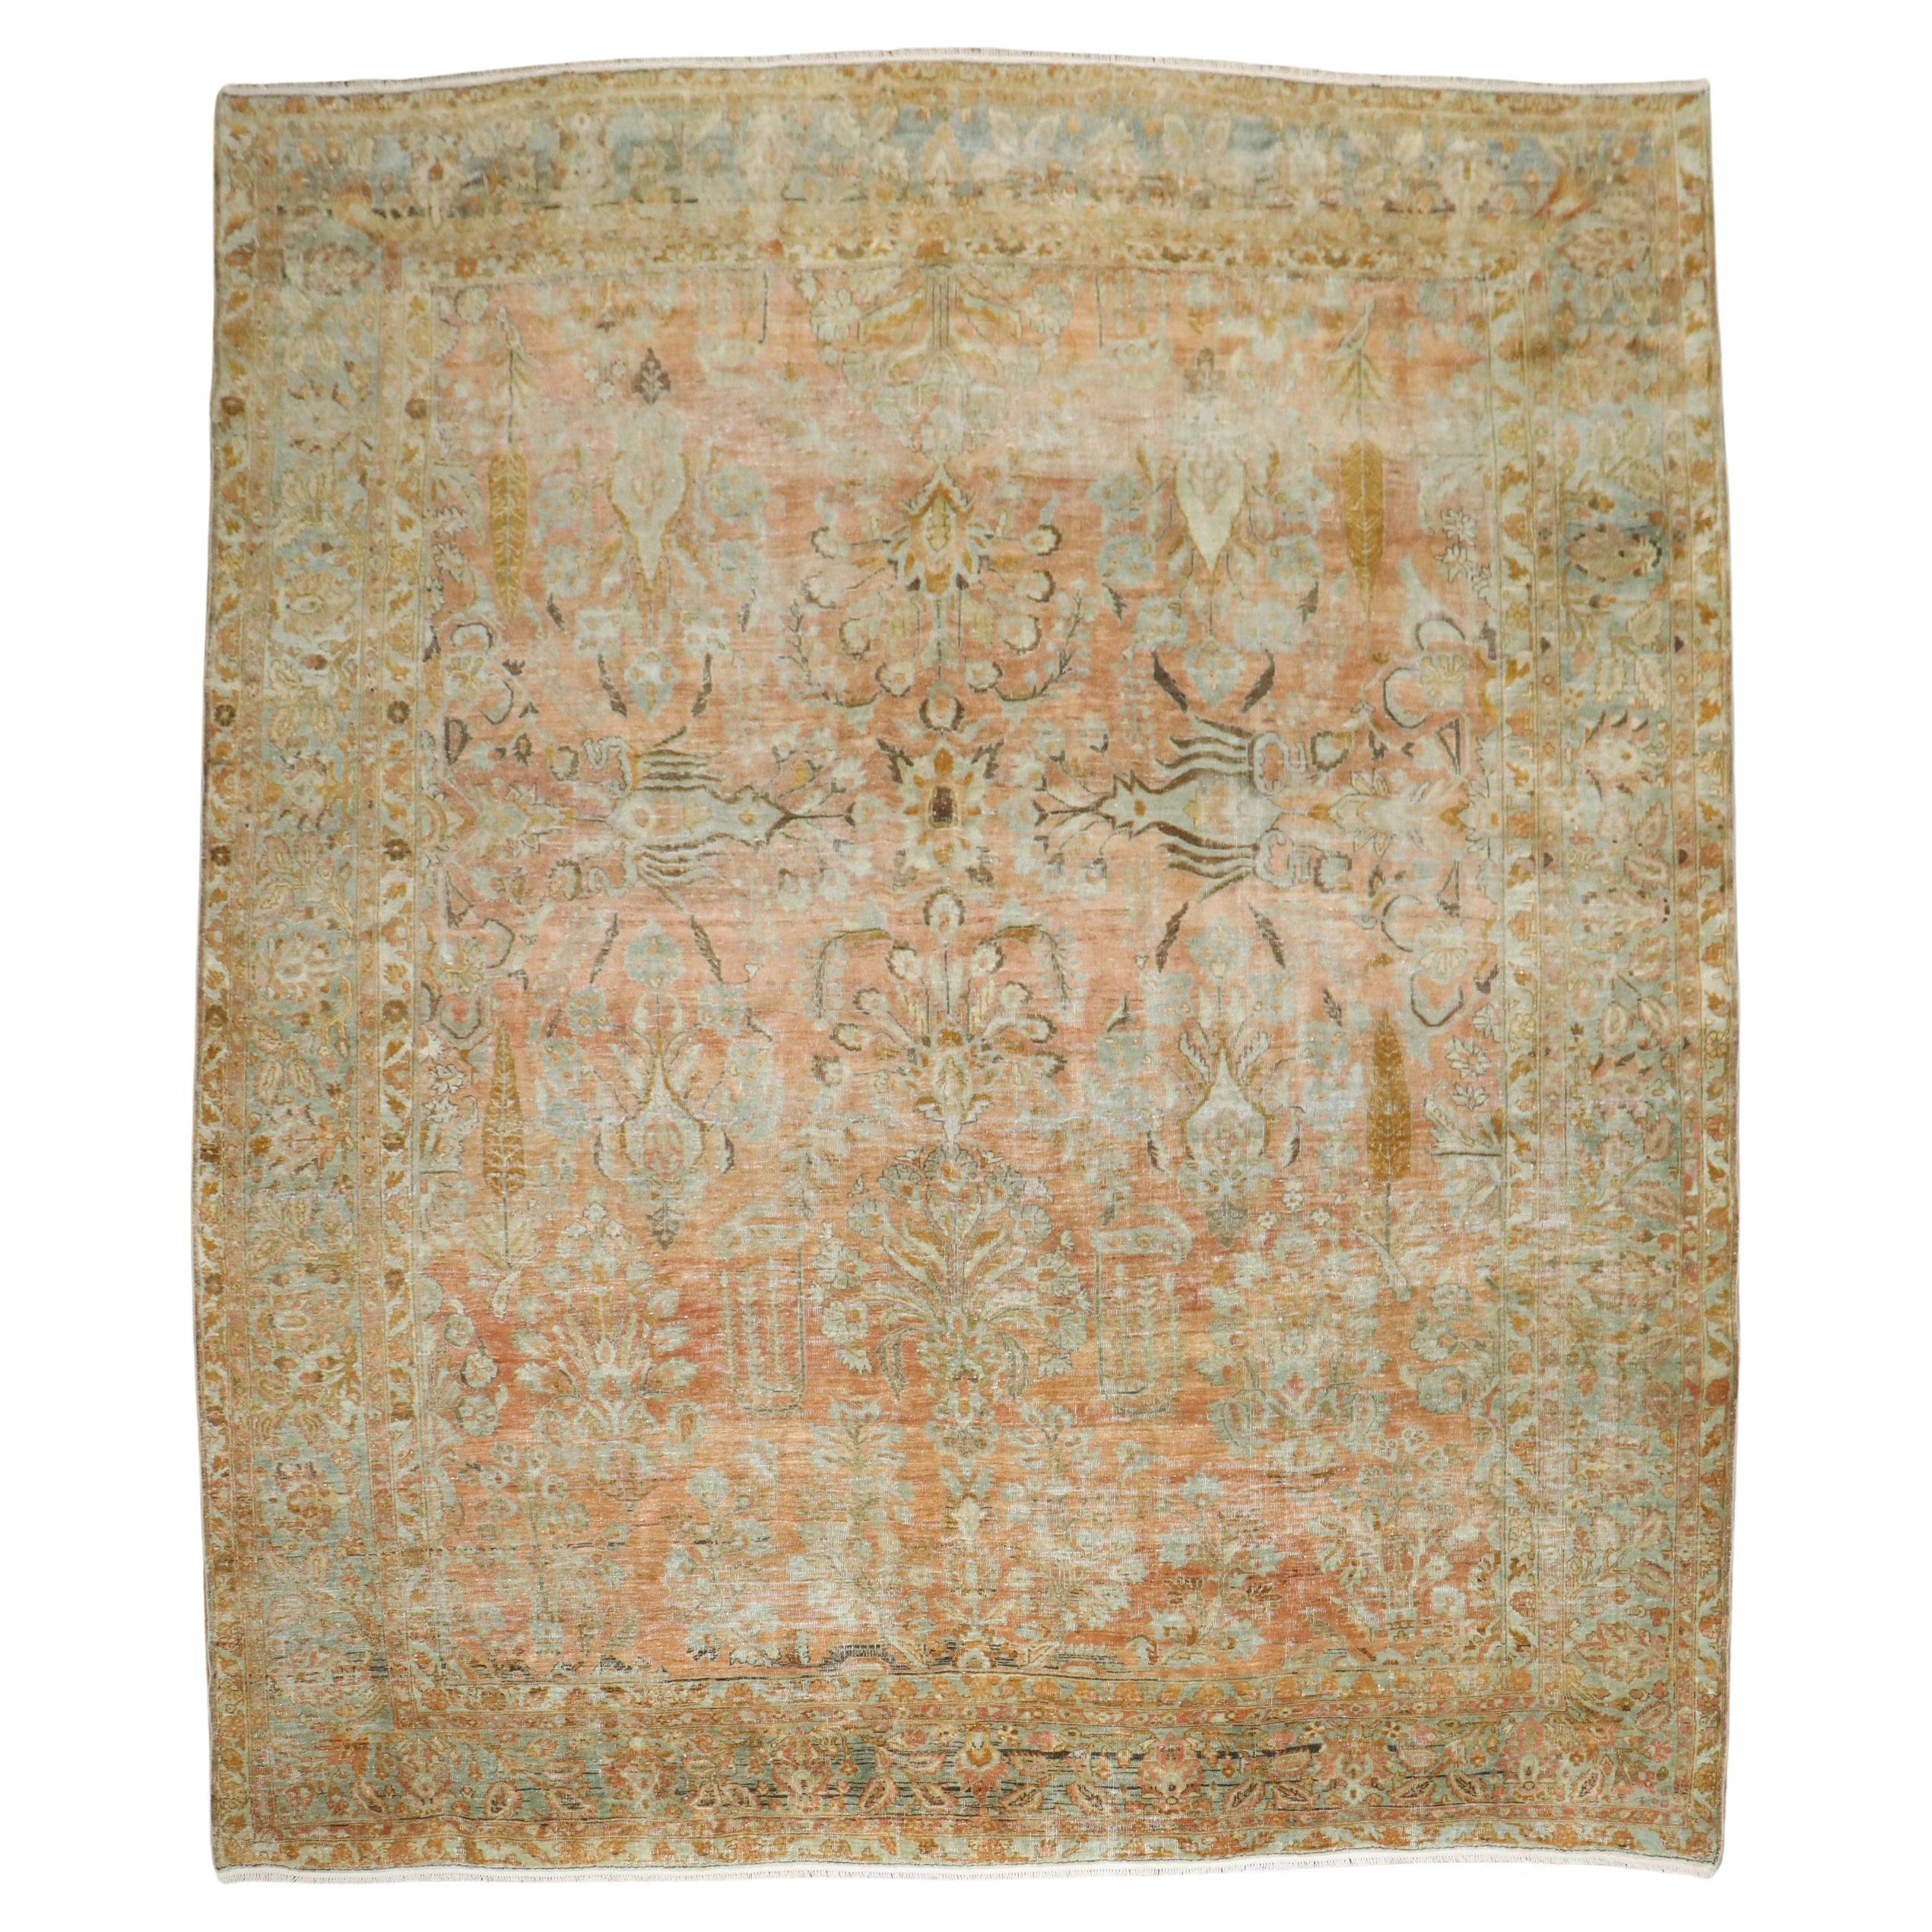 Quadratischer antiker persischer Sarouk-Teppich aus der Zabihi-Kollektion